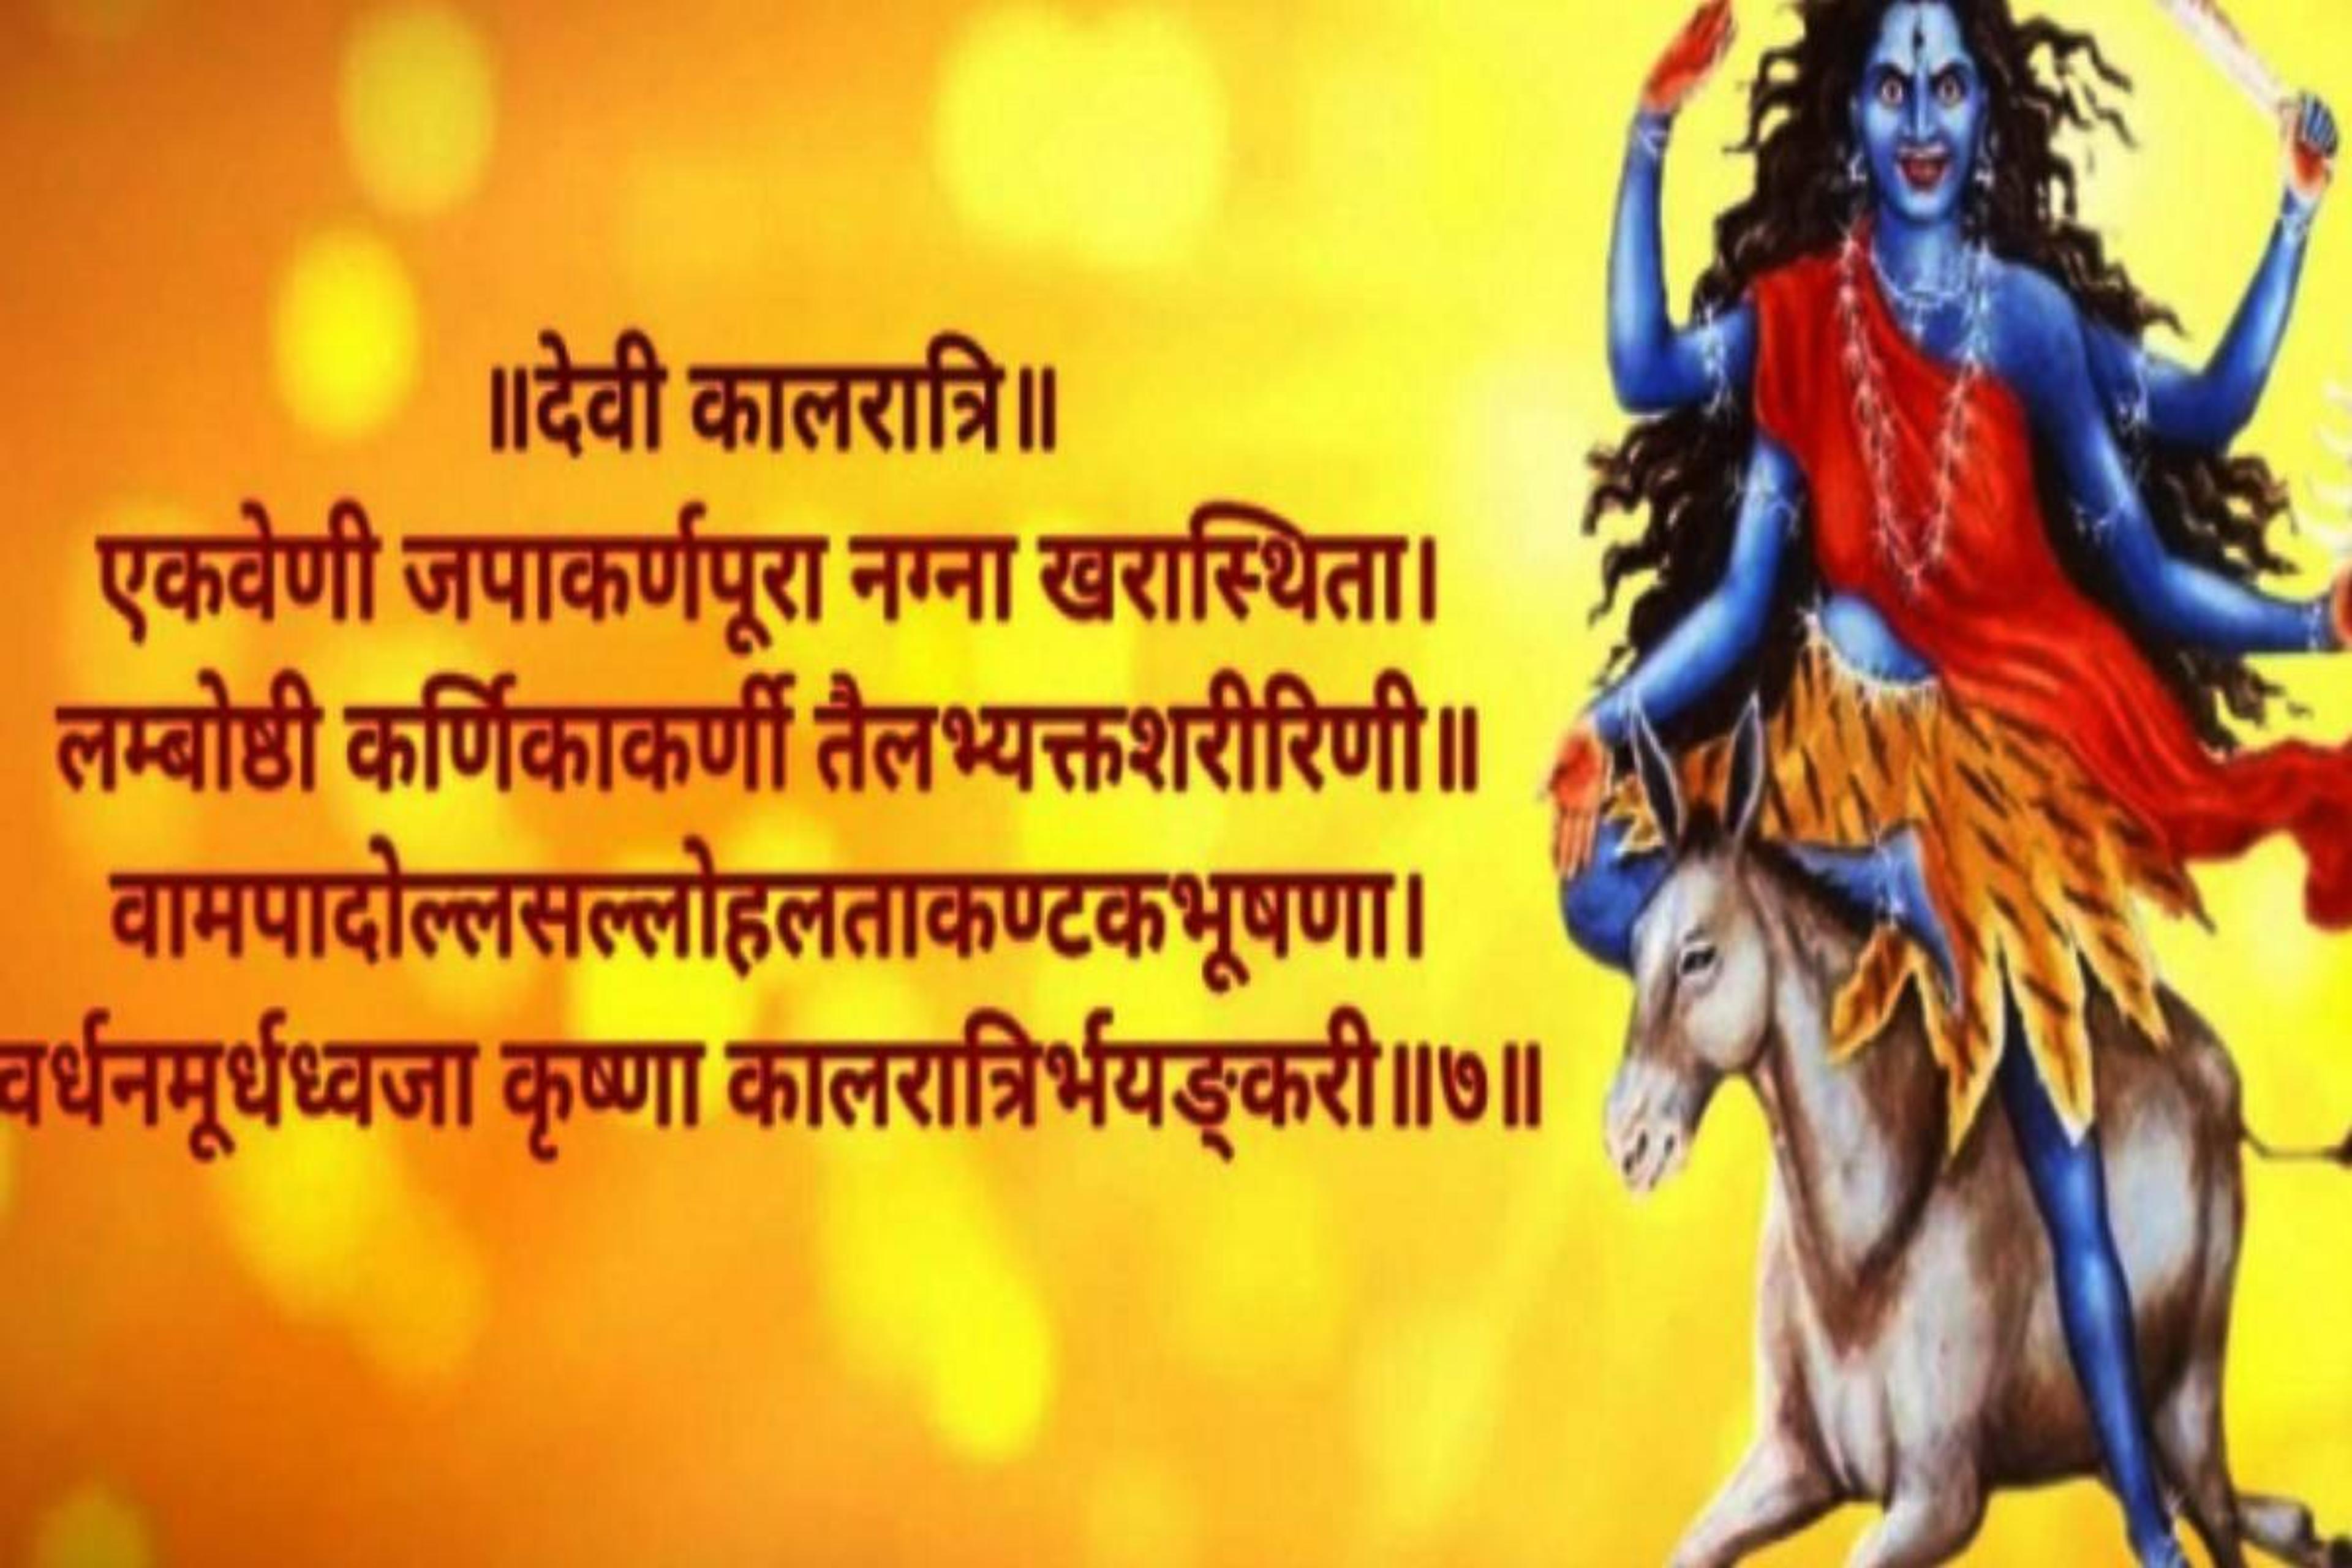 Kali Puja Mantra: ये हैं काली के सबसे पॉवरफुल मंत्र और स्त्रोत, नवरात्रि के
सातवें दिन पूजा से कट जाते हैं अशुभ ग्रहों के दोष